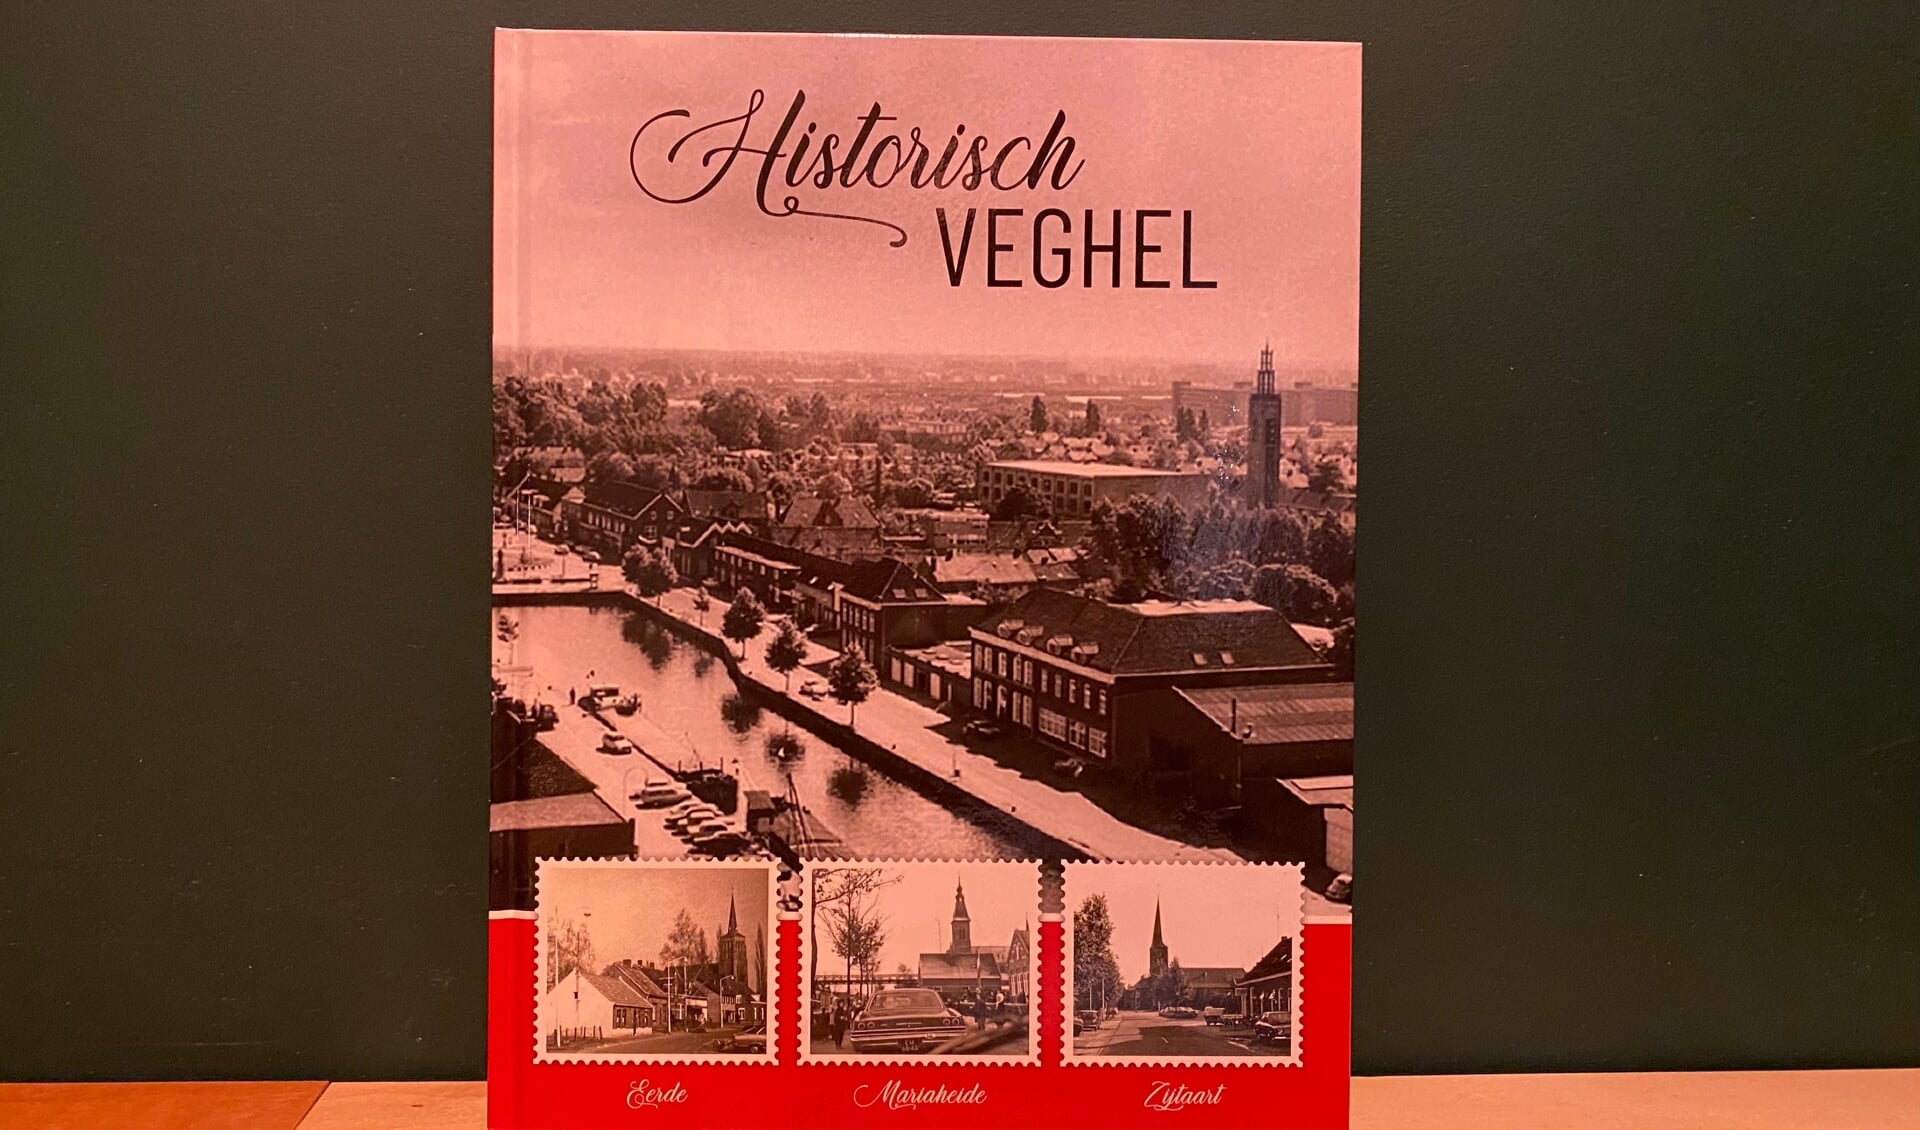 Ontbreken er nog fotoplaatjes in je album Historisch Veghel dan kun je deze opvragen via mailadres: info@vehchele.nl. 